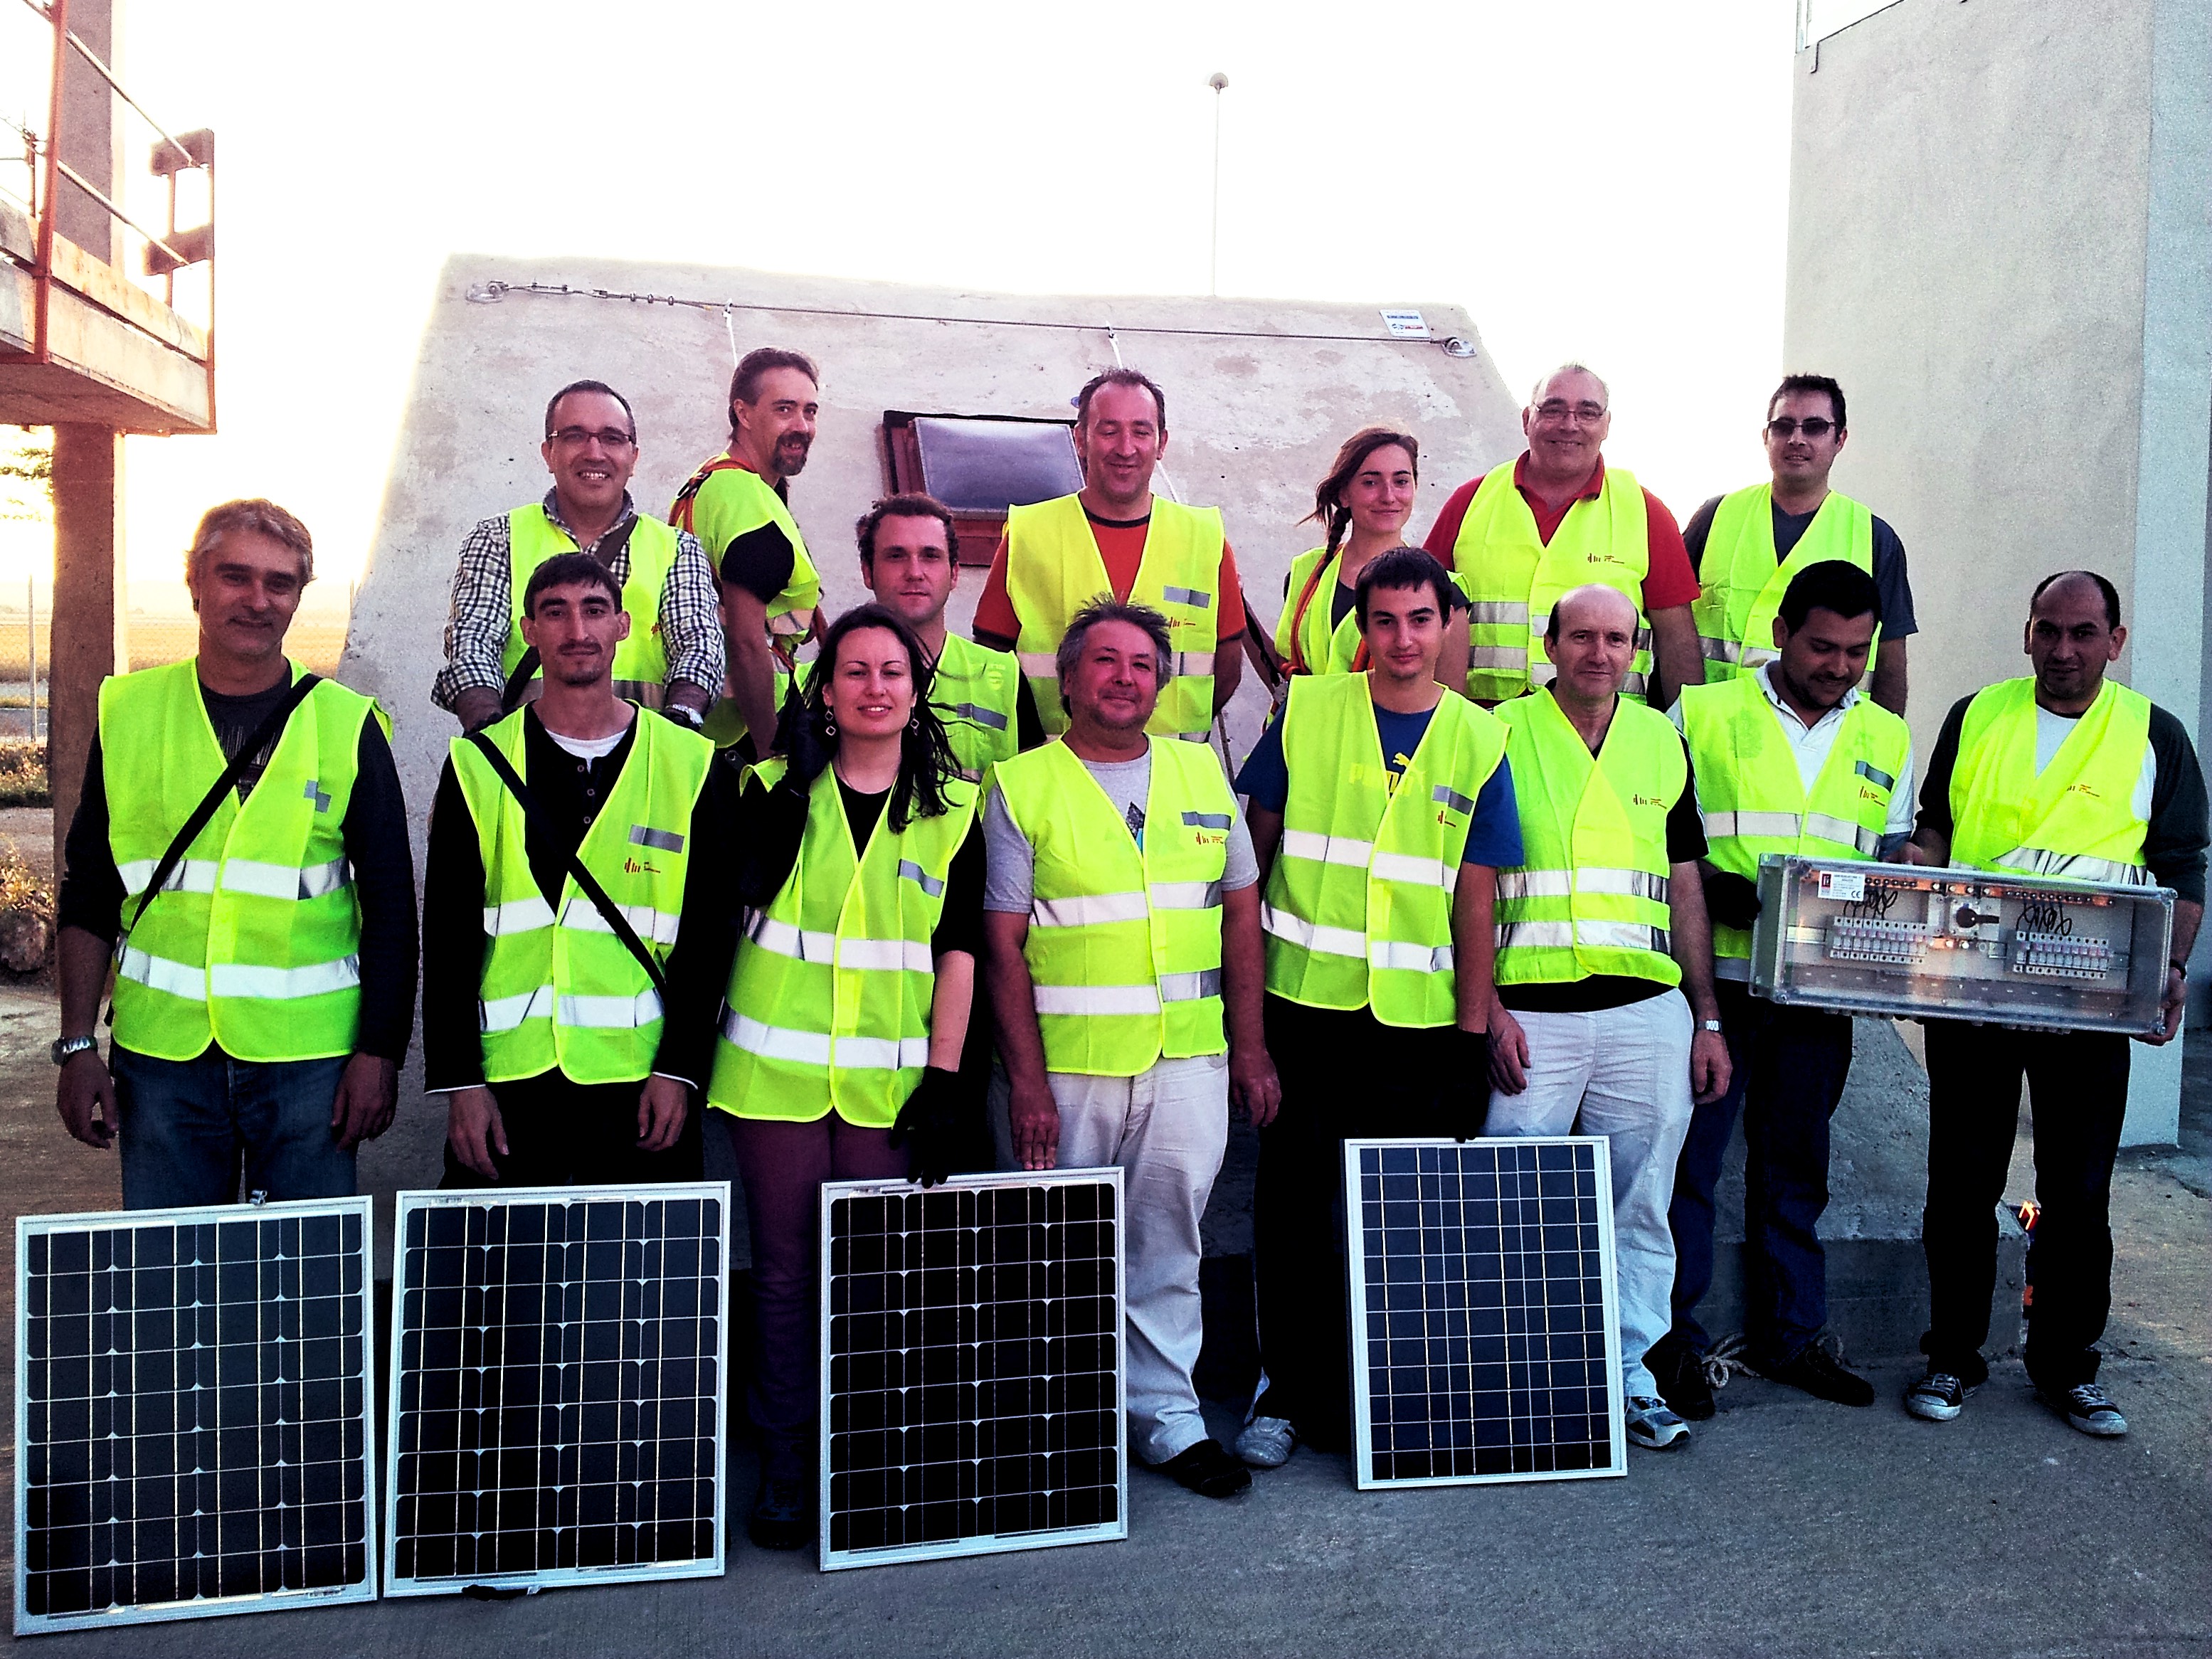 Montaje y Mantenimiento de Instalaciones Solares Fotovoltaicas